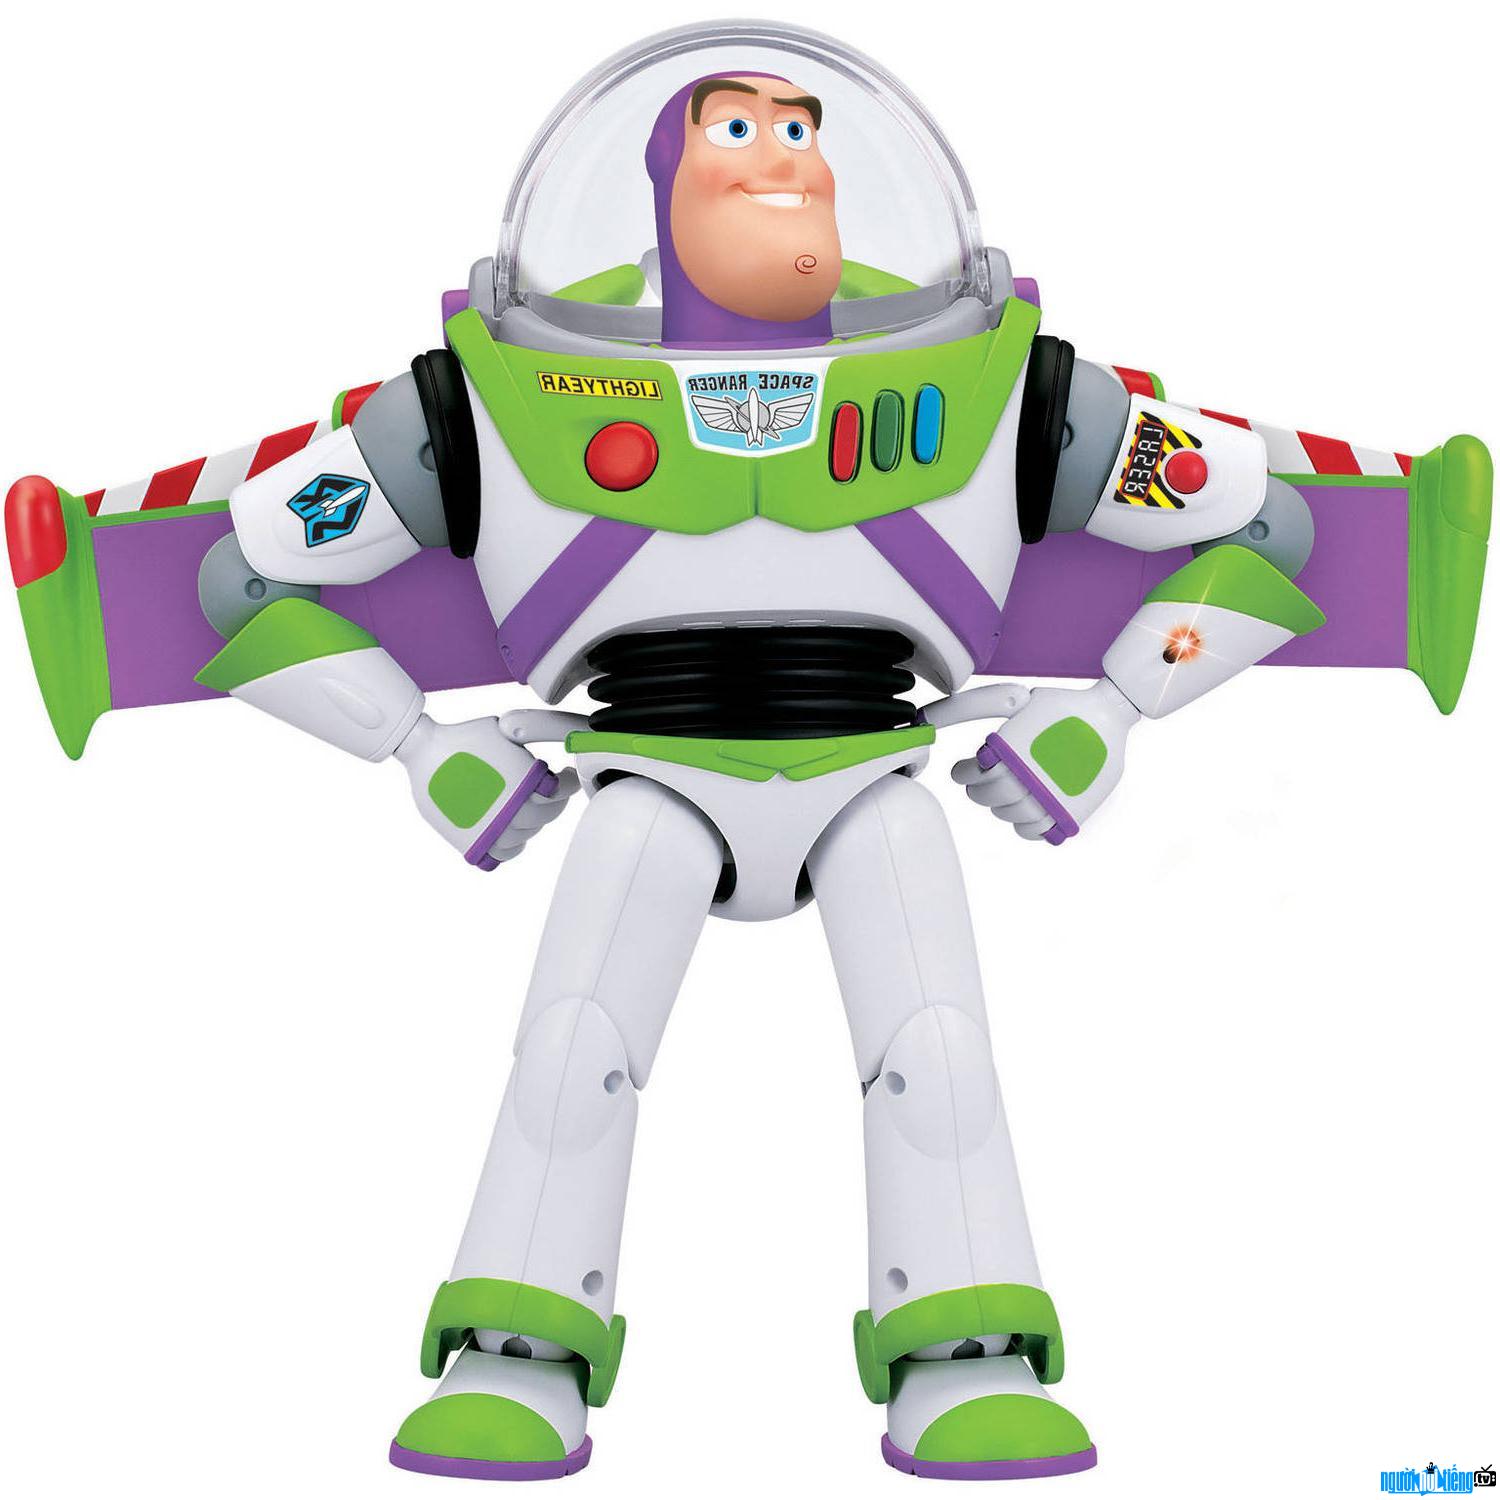 Hình ảnh nhân vật Buzz Lightyear